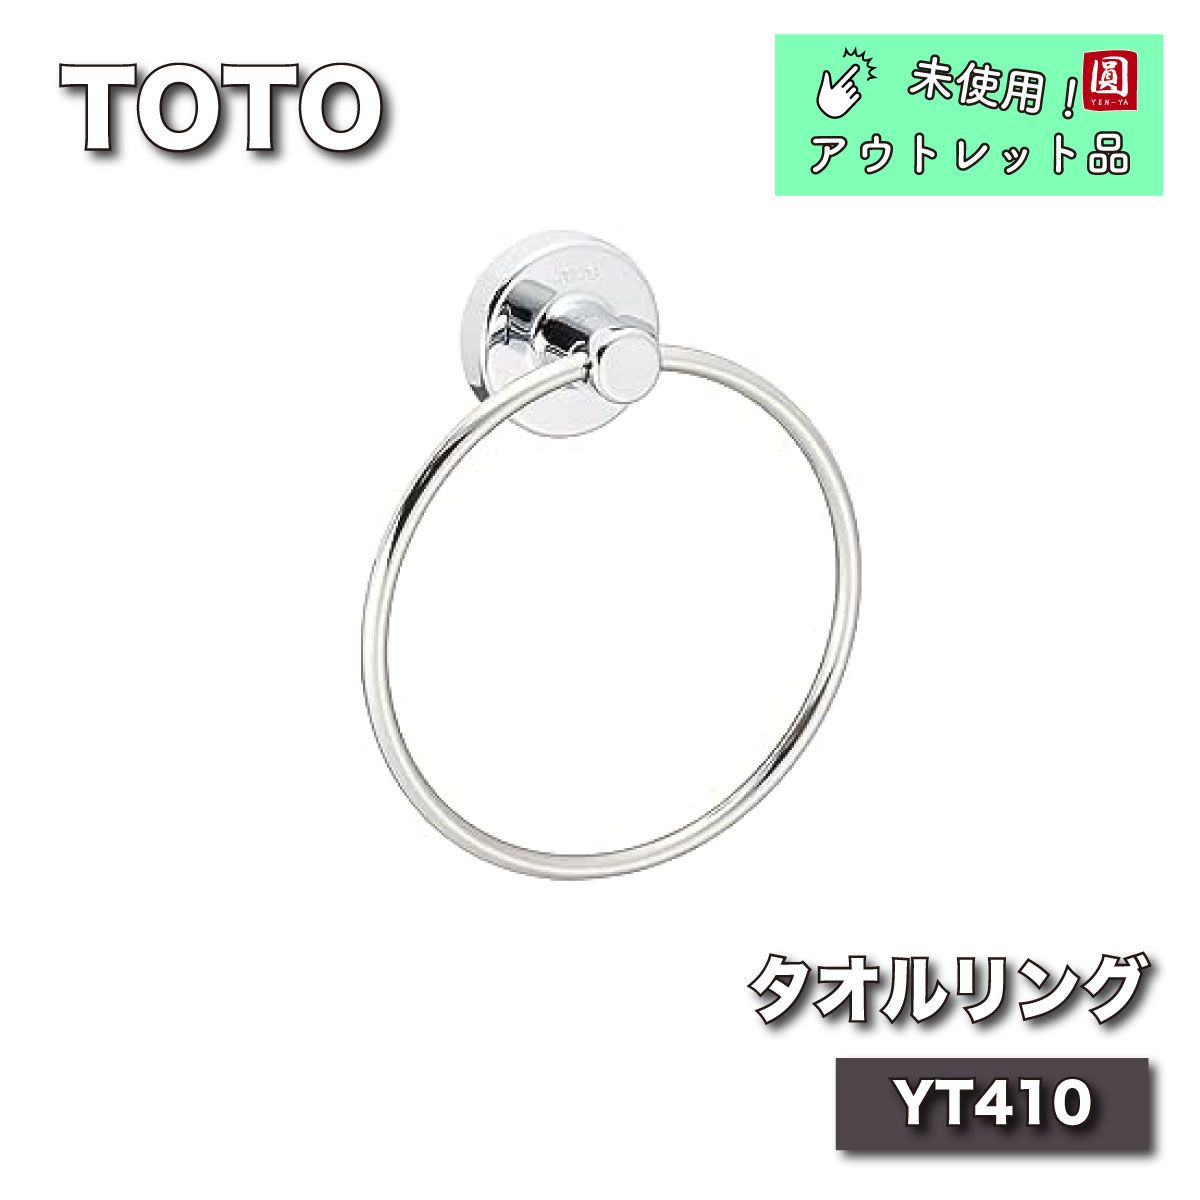 TOTO タオルリング YT410 - メルカリ